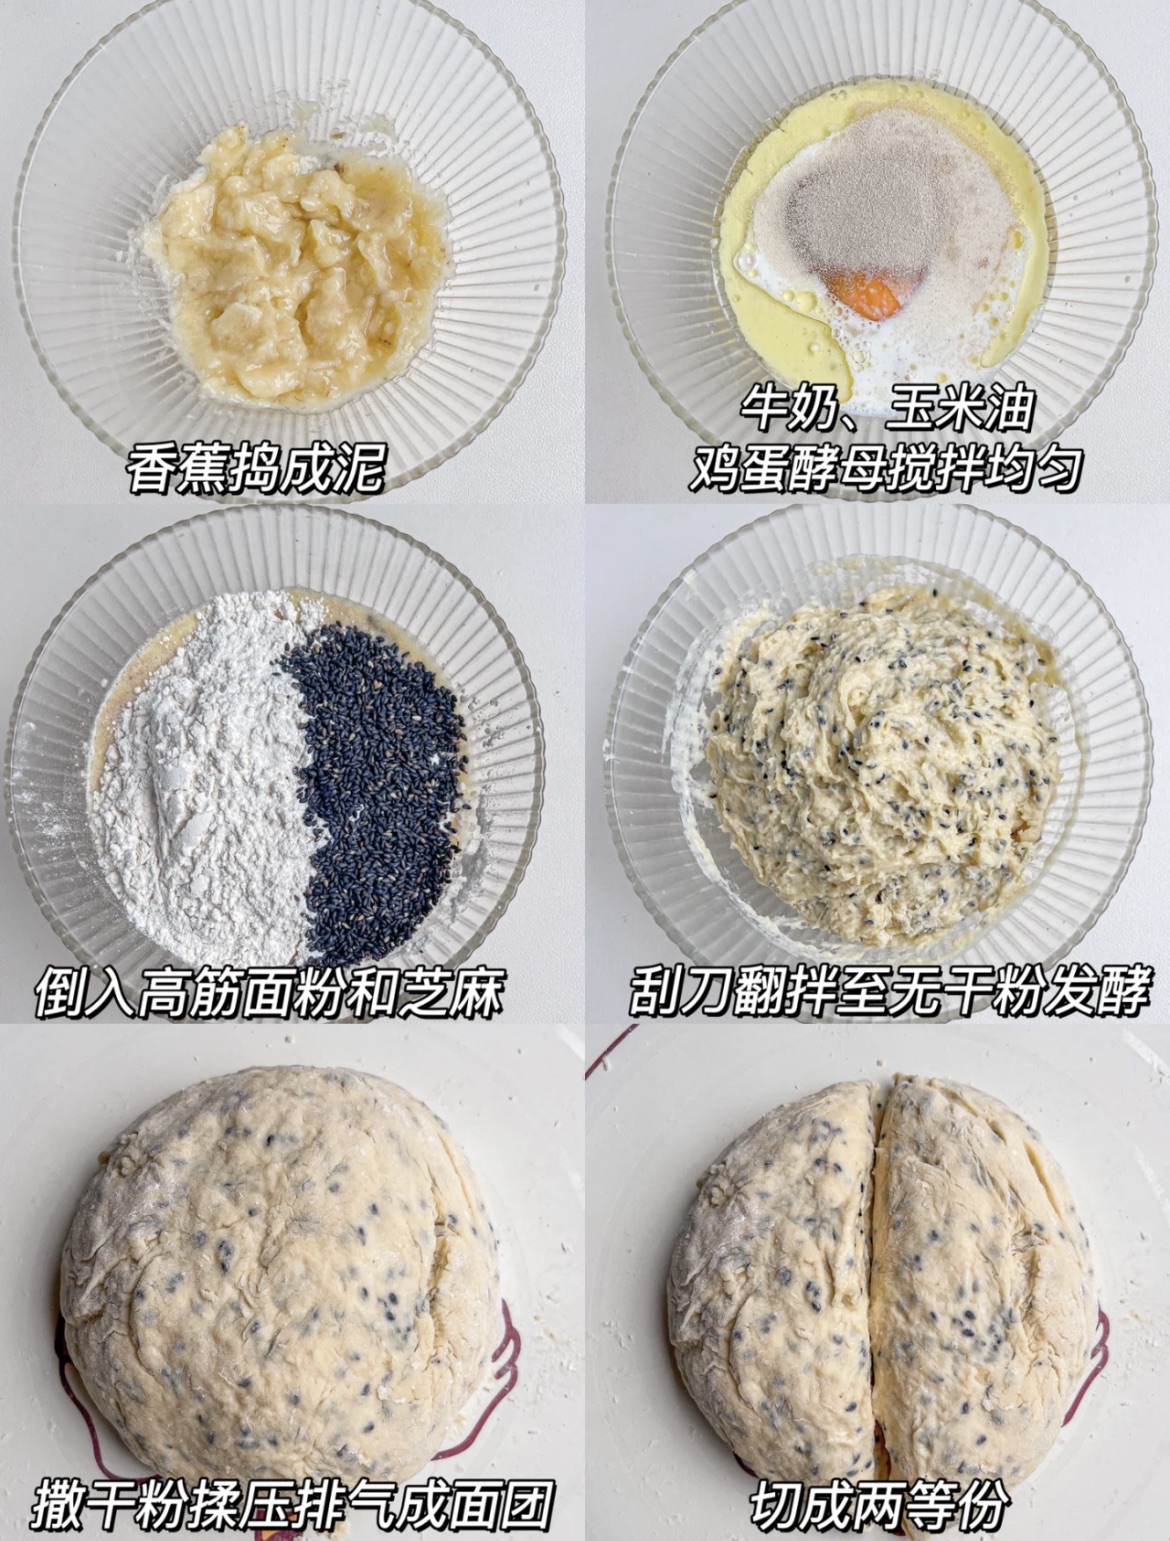 Bibi's Baking Journey: 是面包还是蛋糕?~香蕉面包【Banana Bread】